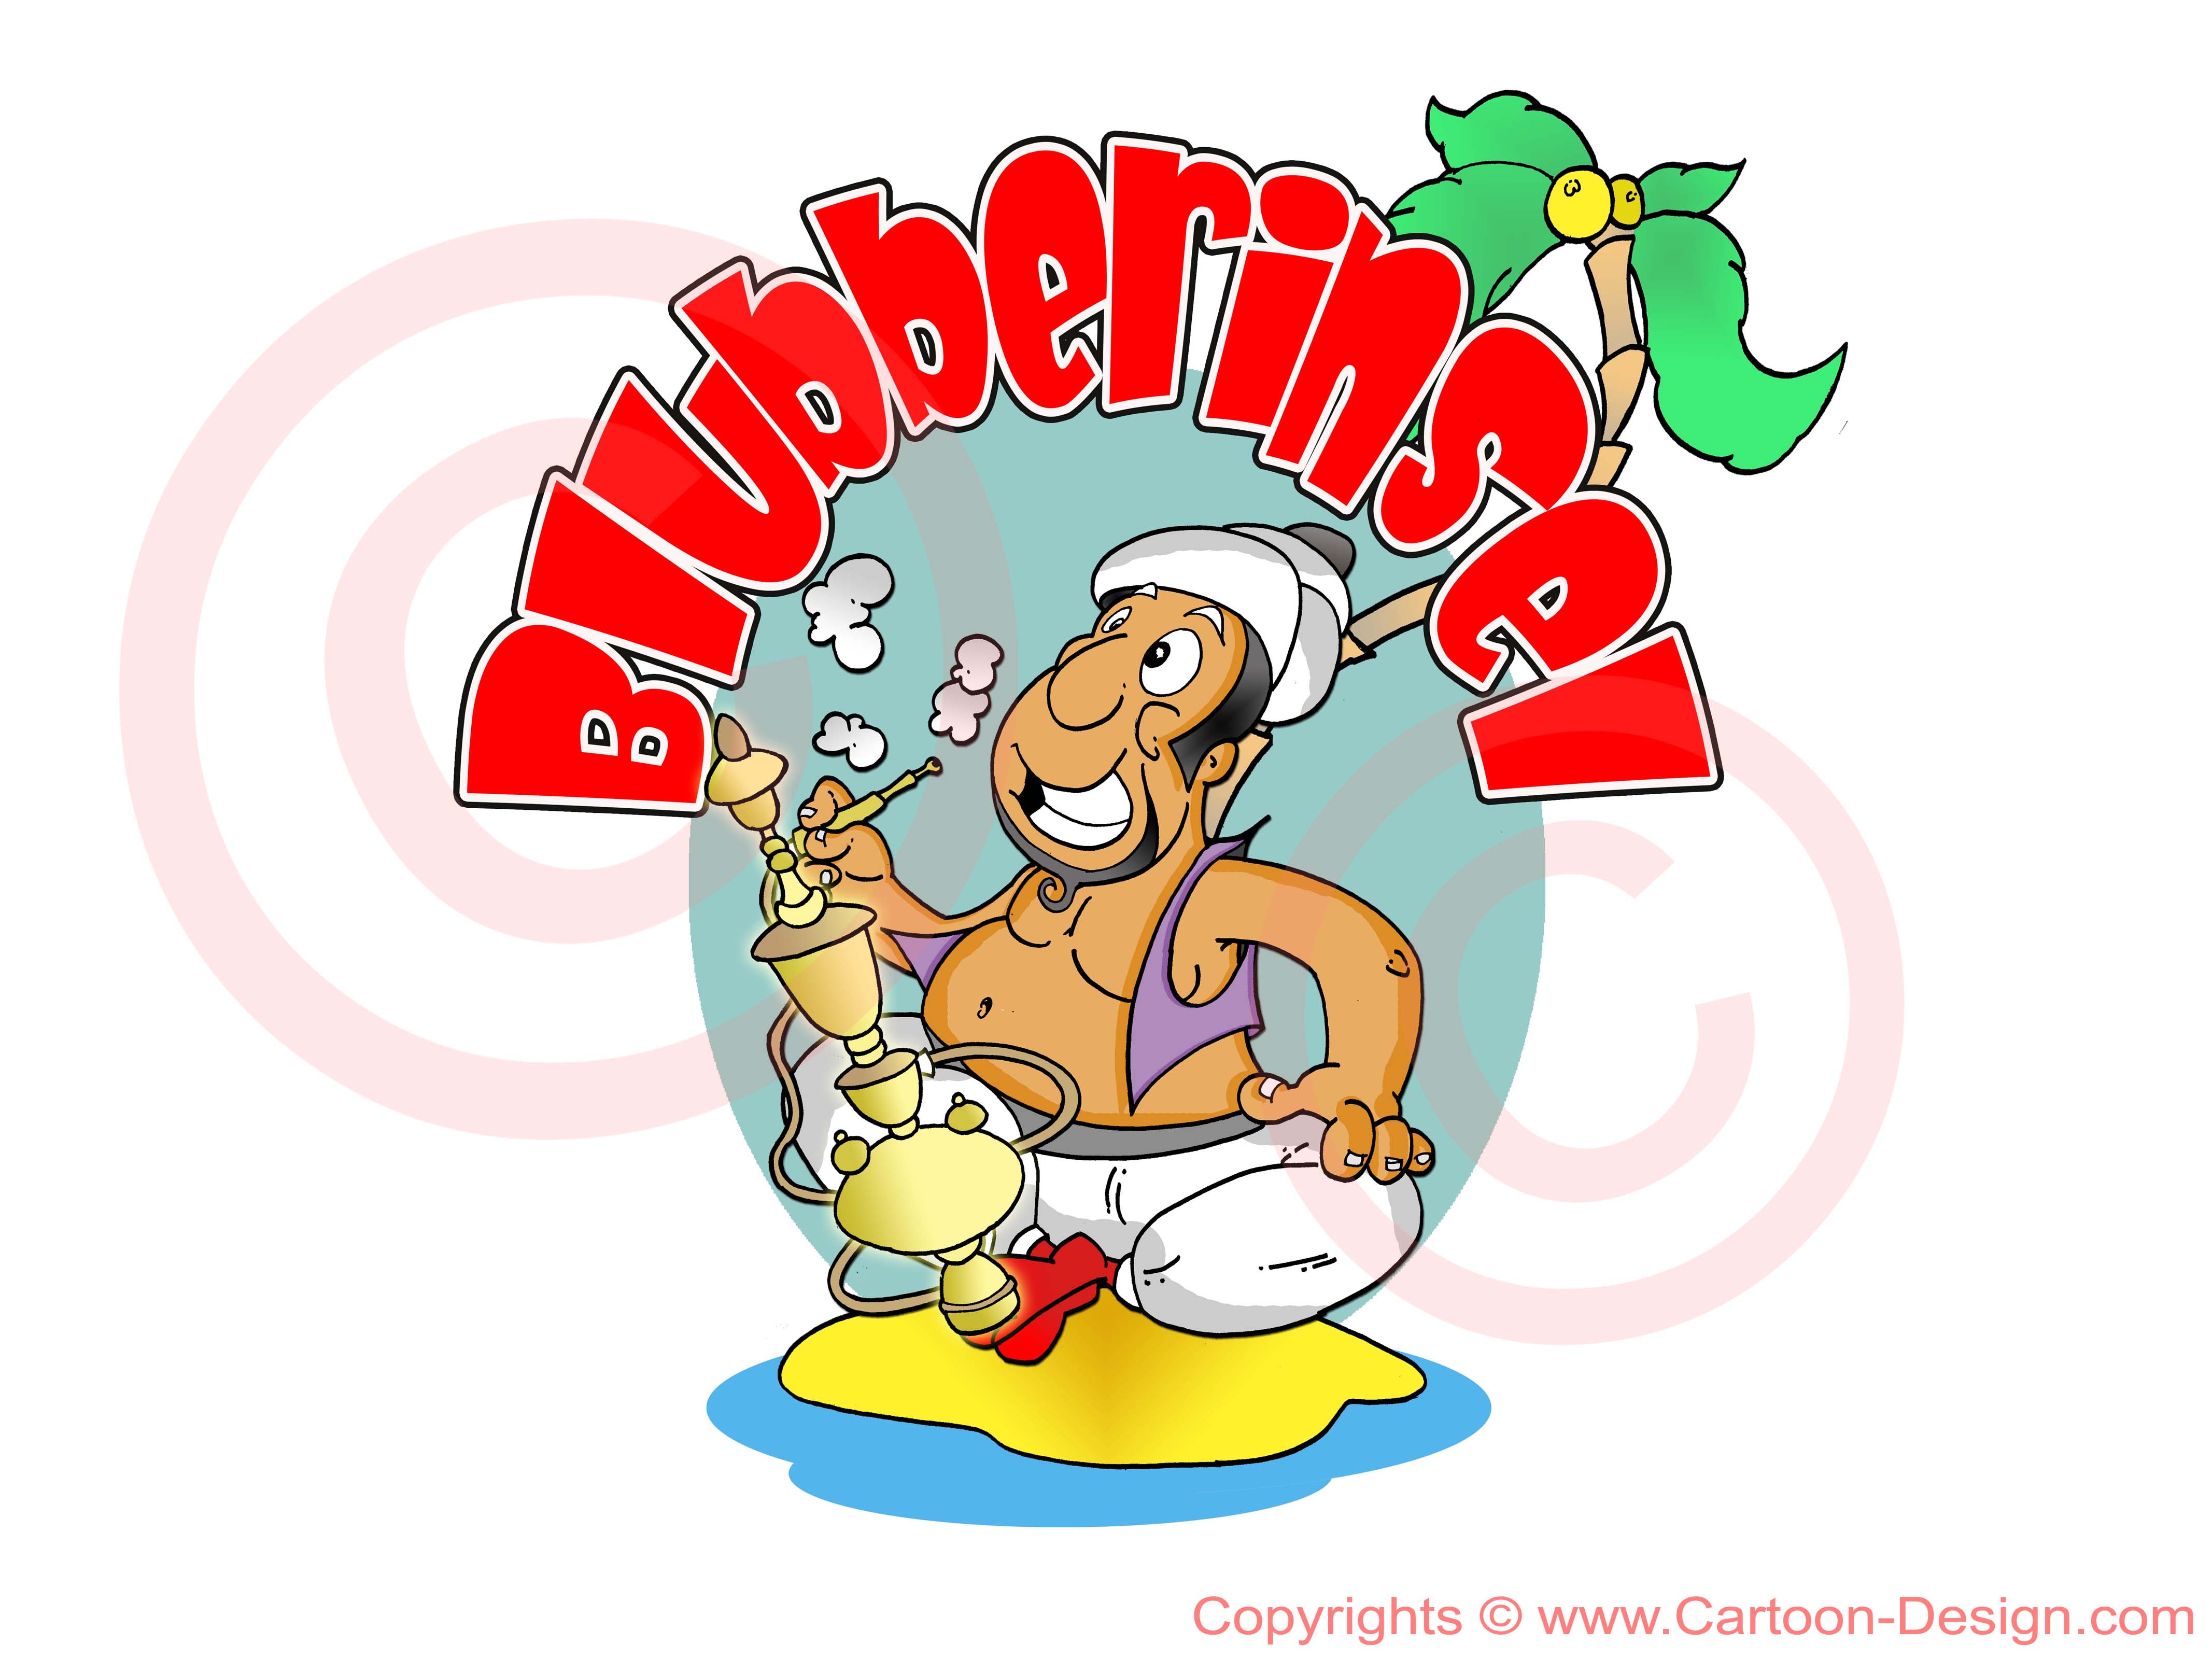 Cartoon Logo für Online Shop Blubberinsel - Logo Design ohne Templates